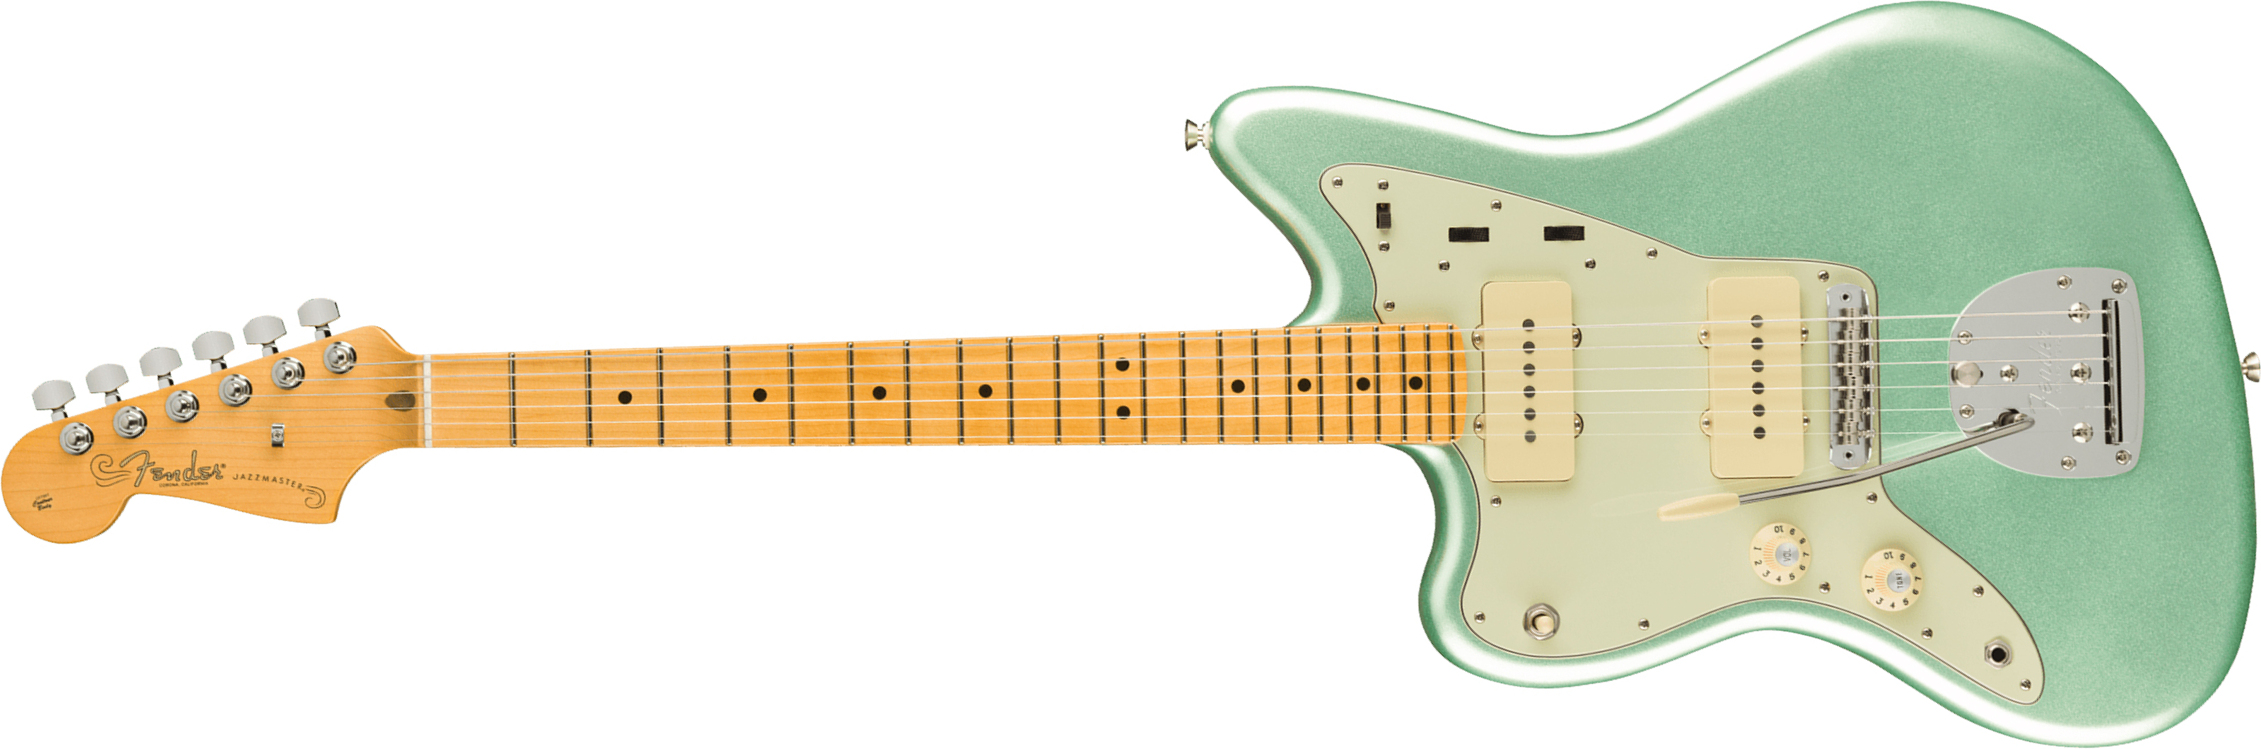 Fender Jazzmaster American Professional Ii Lh Gaucher Usa Mn - Mystic Surf Green - Linkshandige elektrische gitaar - Main picture